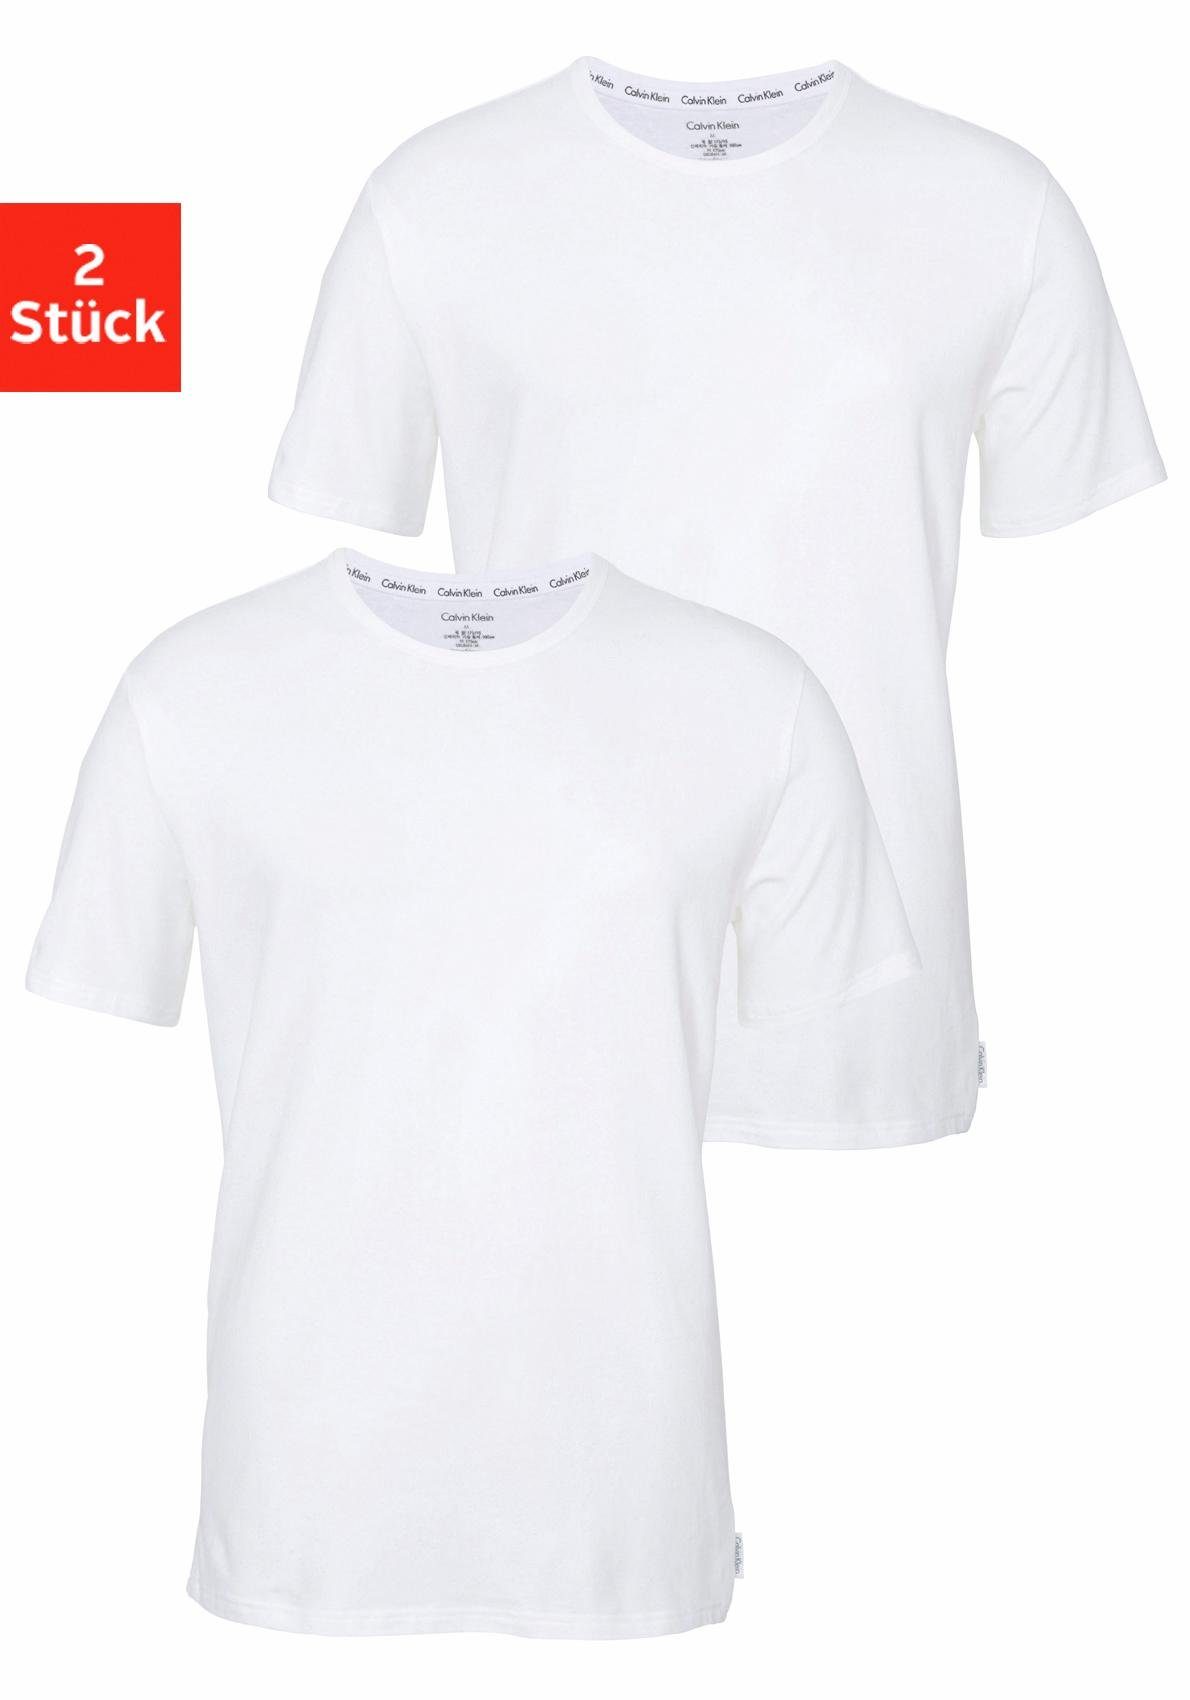 Calvin Klein T-Shirt Herren online kaufen | OTTO